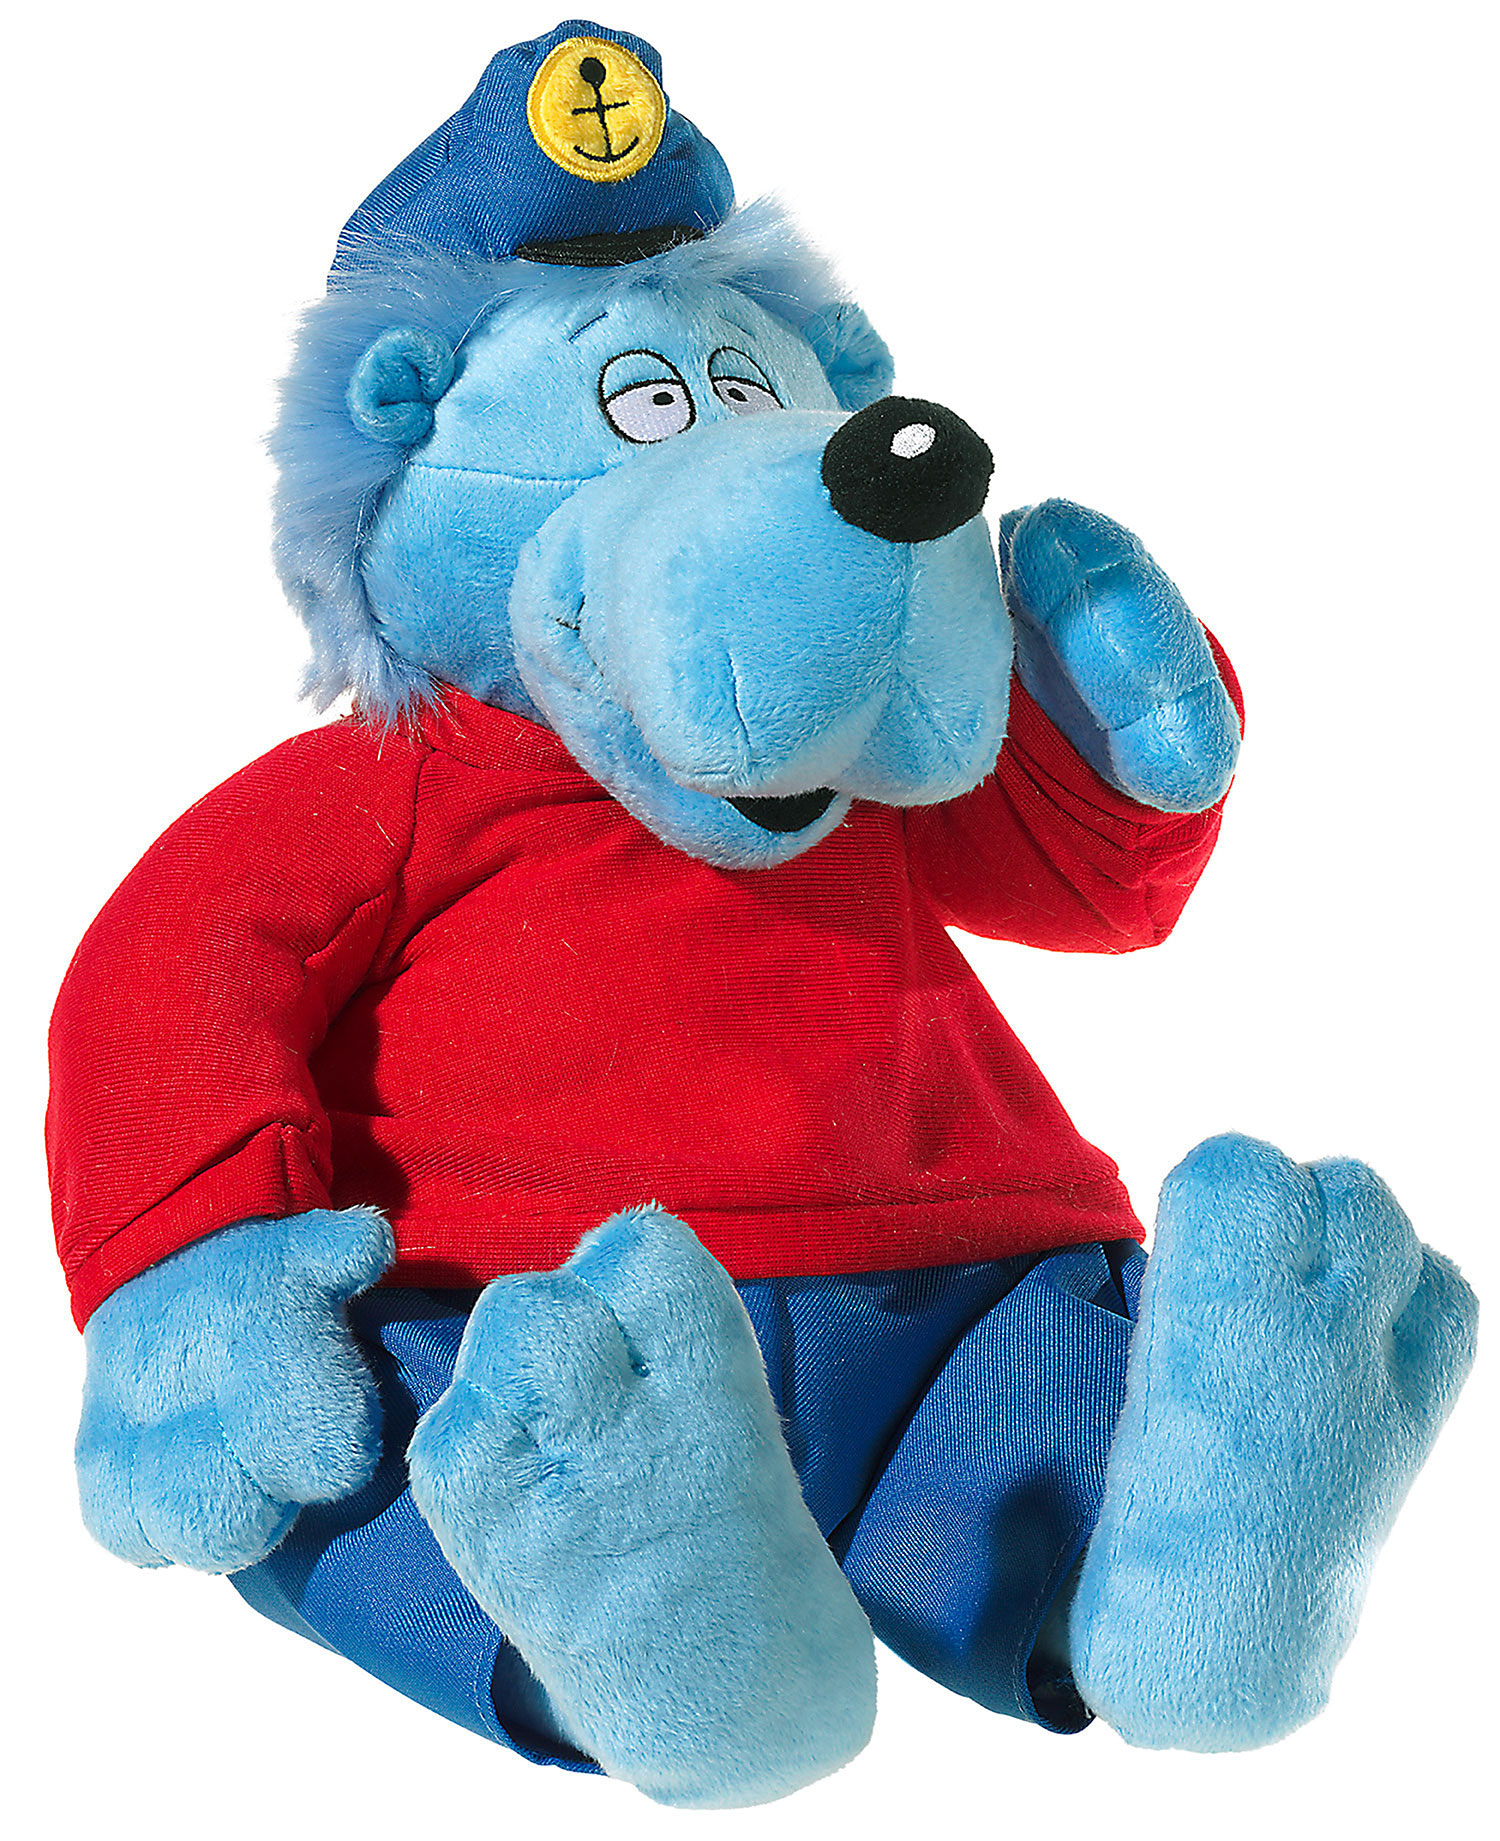 Heunec Käptn Blaubär, der Geschichtenerzähler, sitzend in kuscheligen 35cm